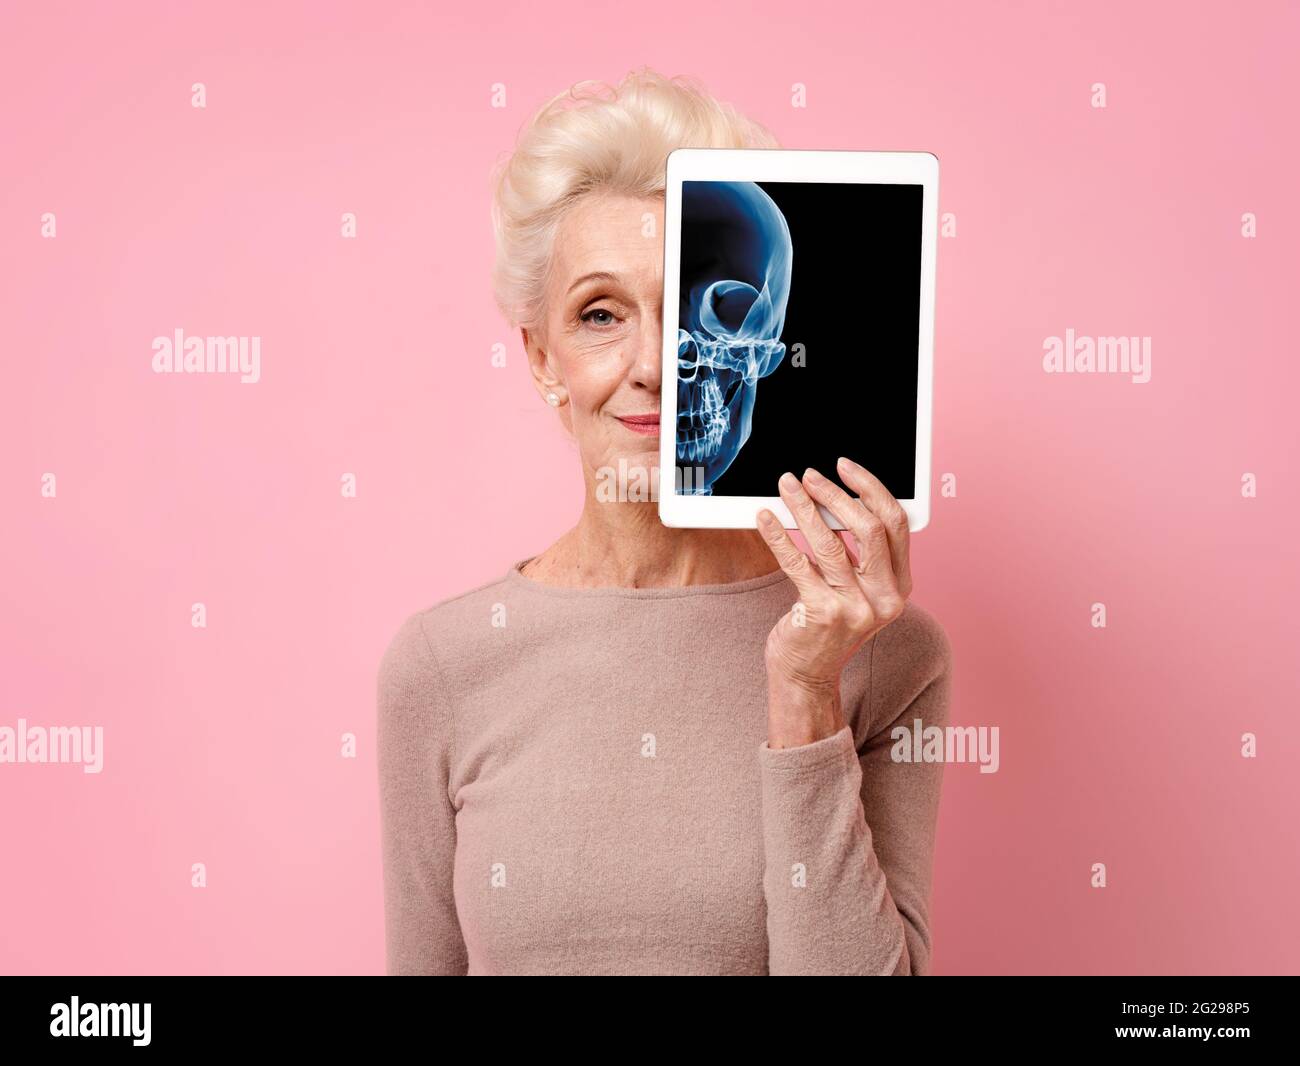 Une femme attirante présente des rayons X du crâne. Photo d'une femme âgée souriante avec une tablette dans les mains sur fond rose. Concept médical Banque D'Images